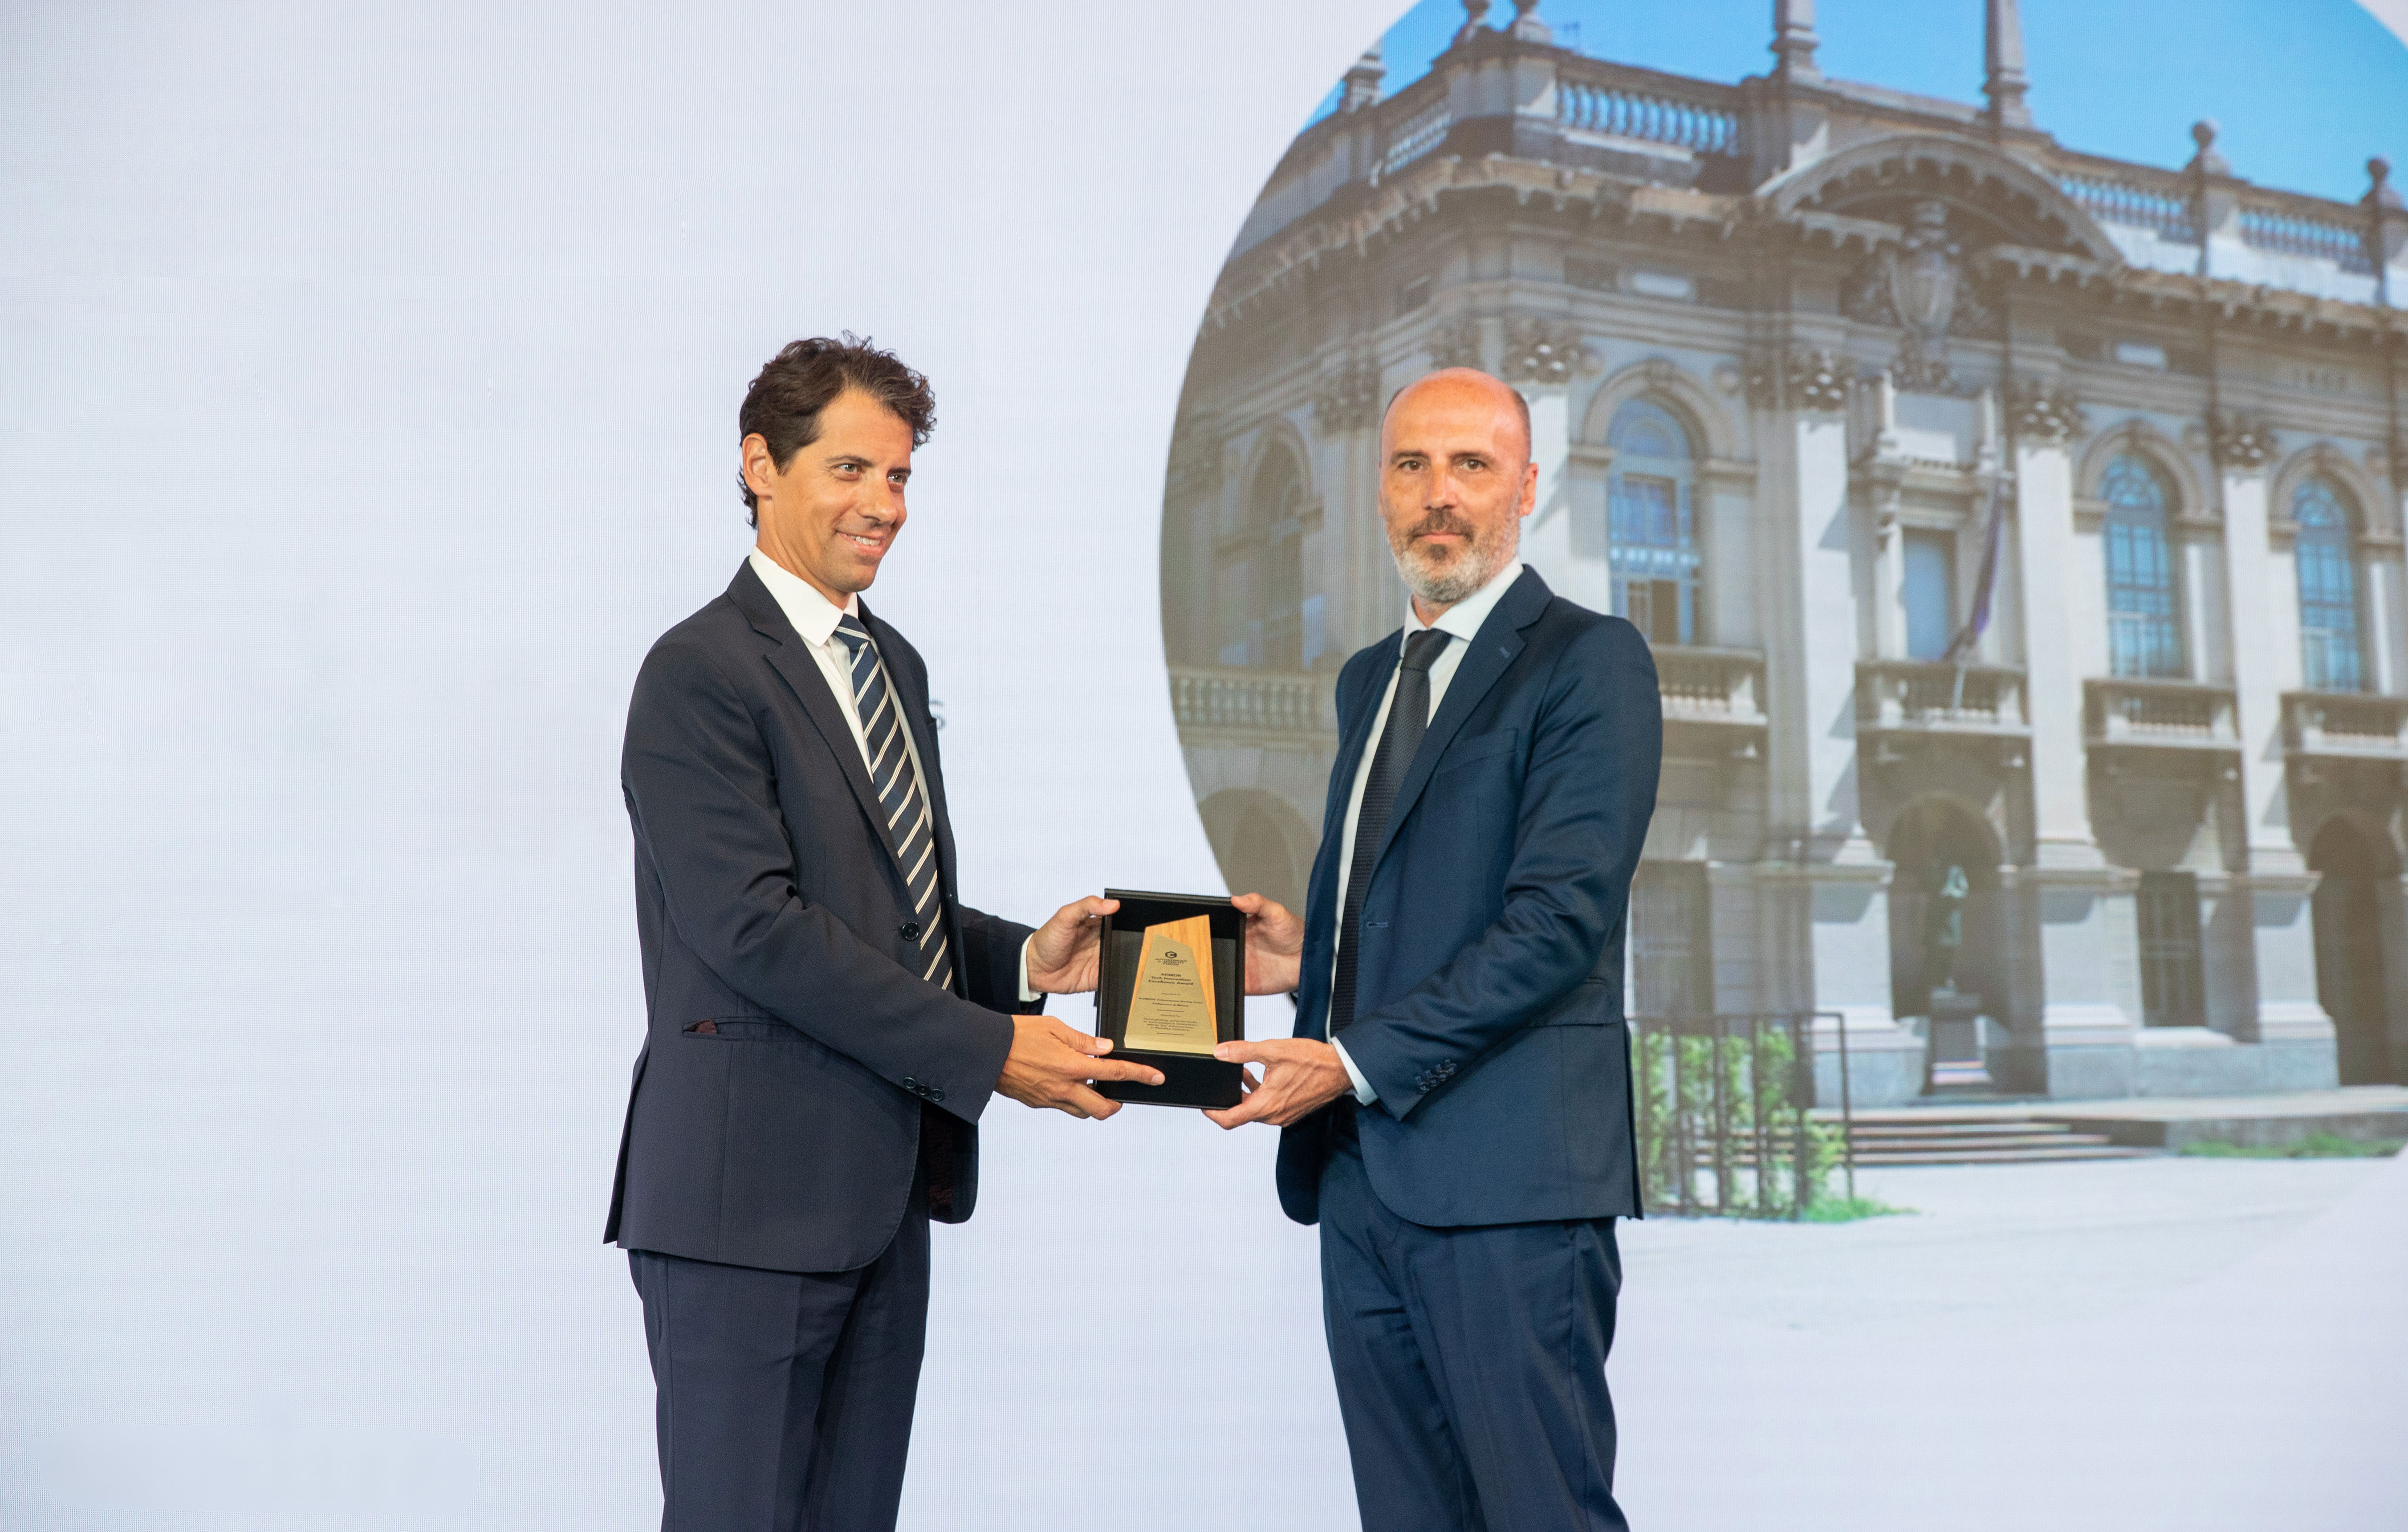 Sergio Savaresi receives the award